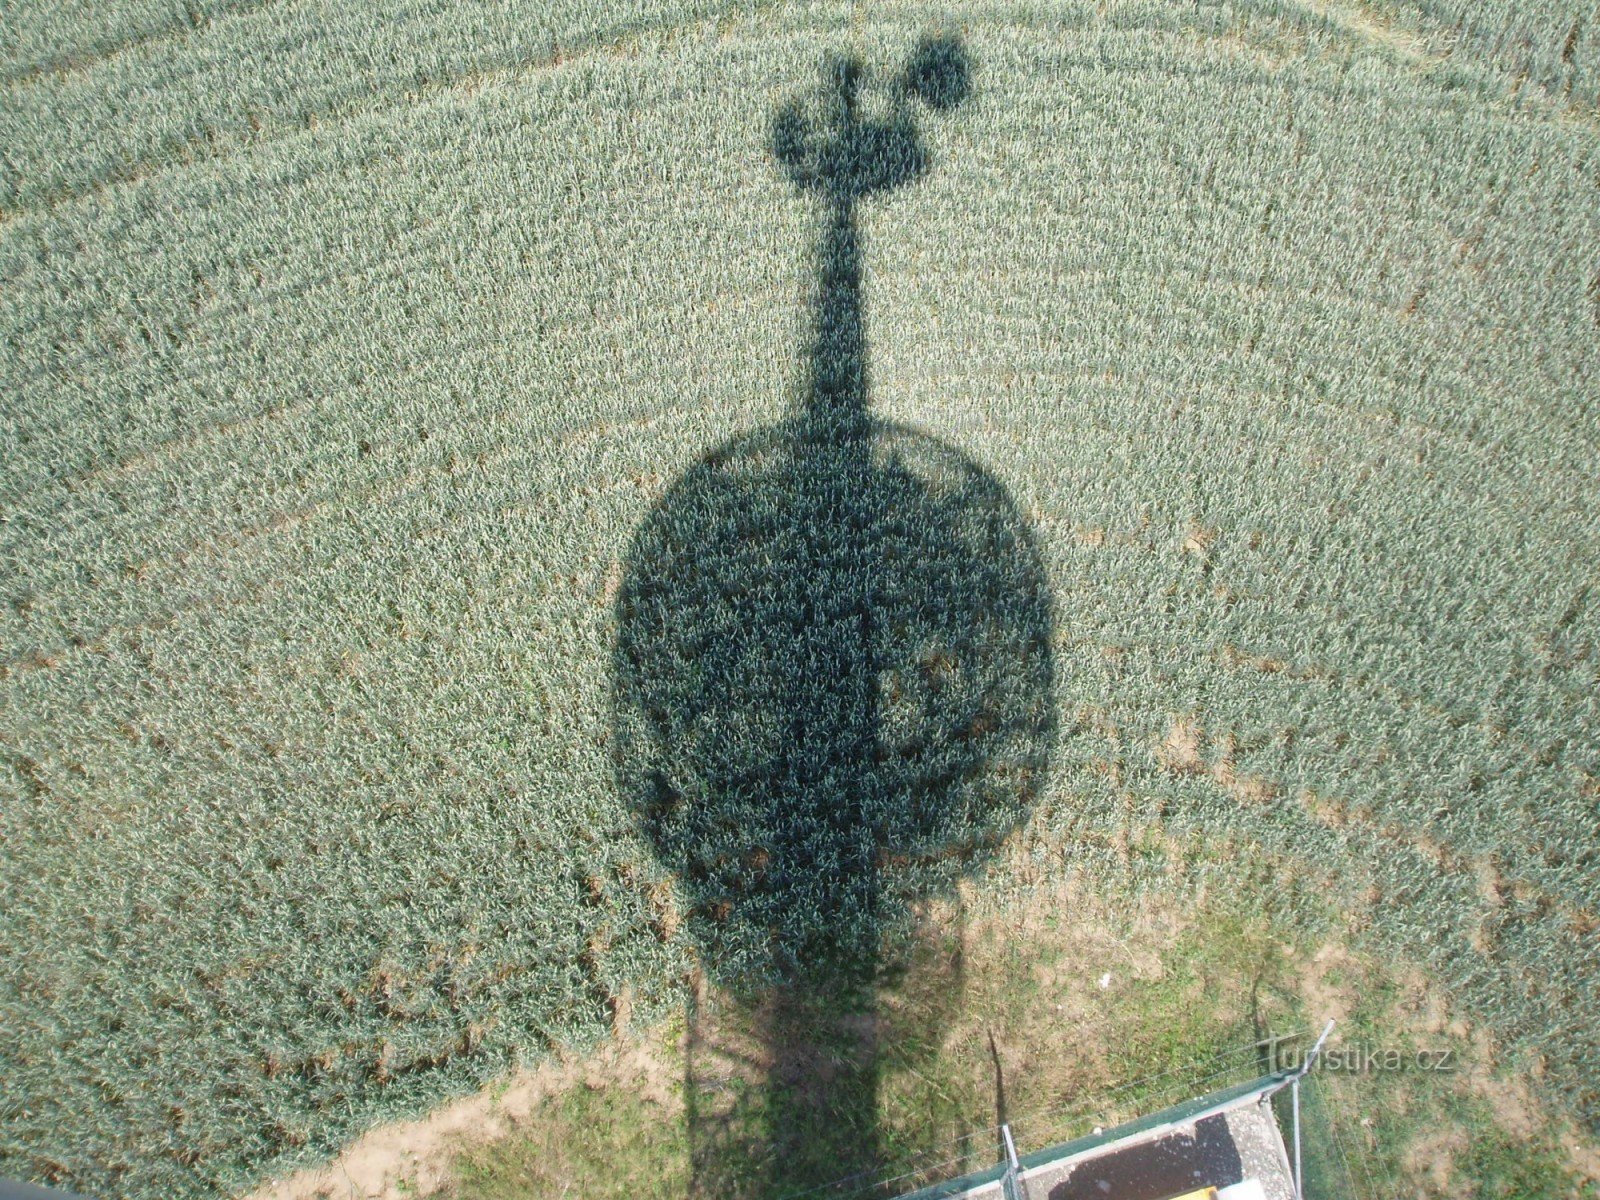 De la tour d'observation, vous pouvez voir la même tour d'observation, projetée sur le terrain